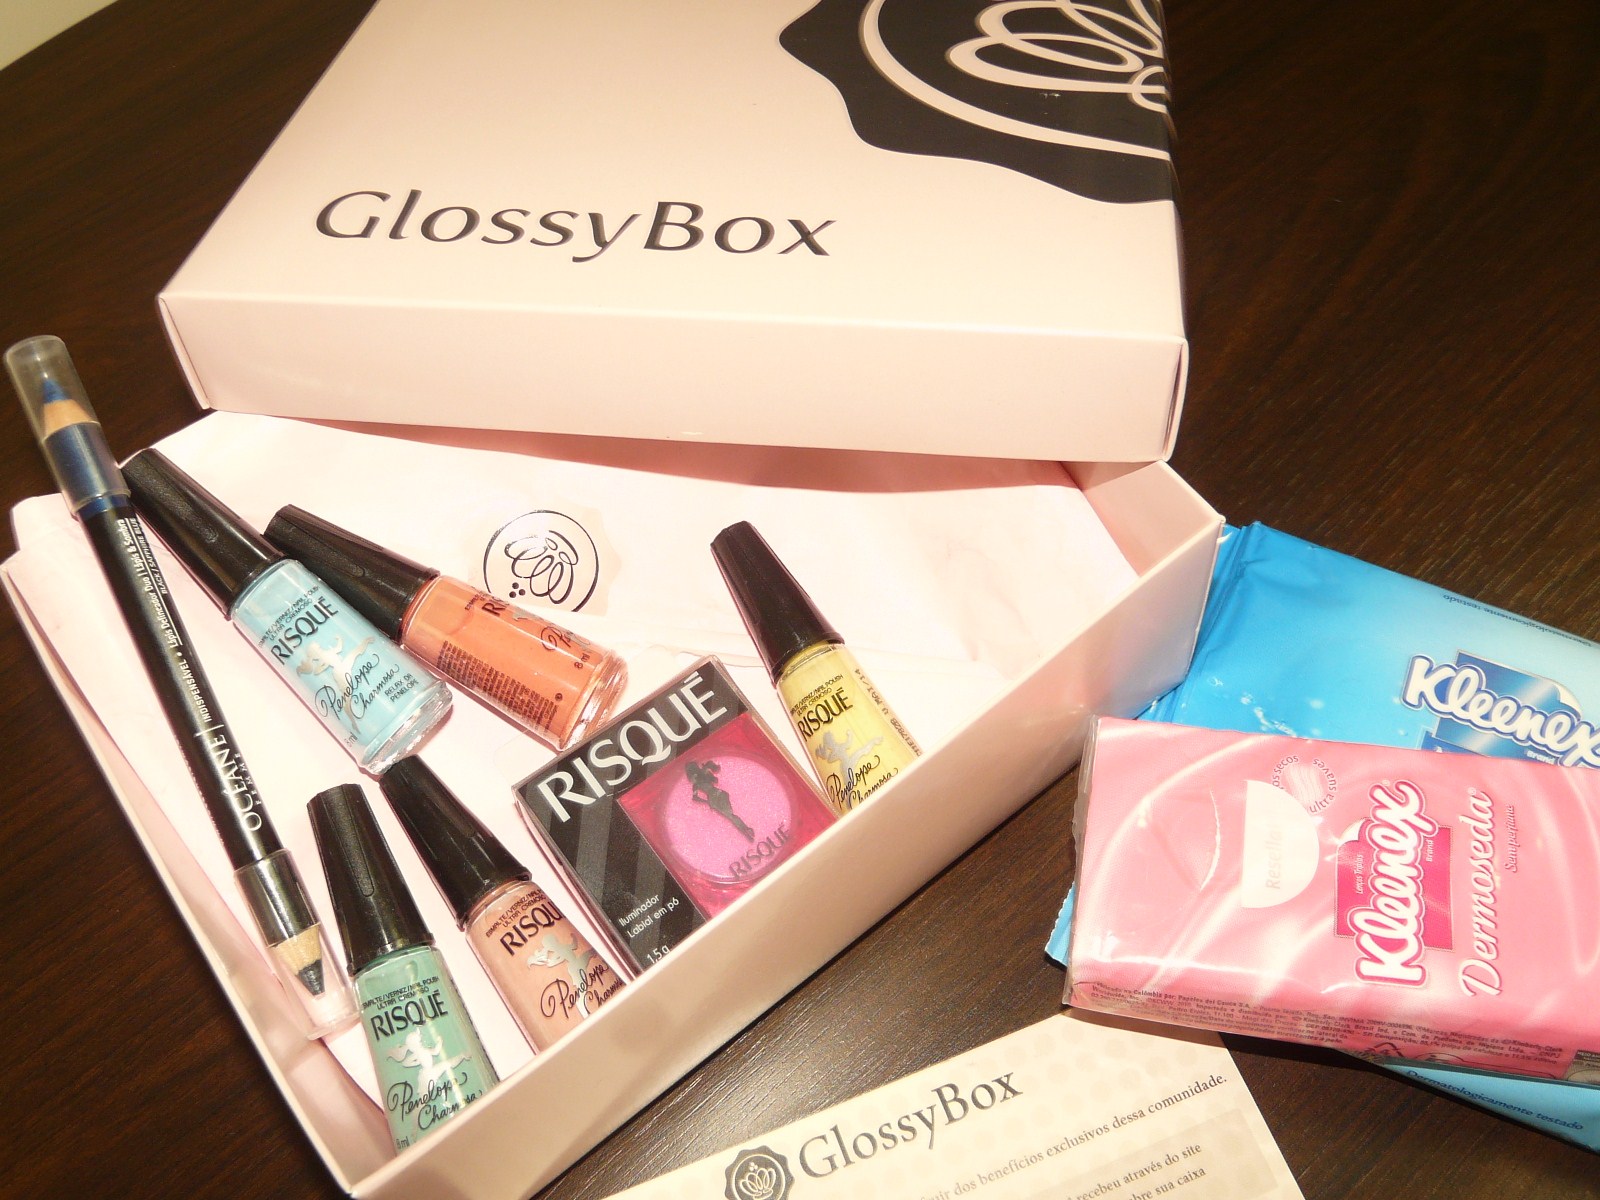 GlossyBox – As novidades de beleza todo mês em sua casa!